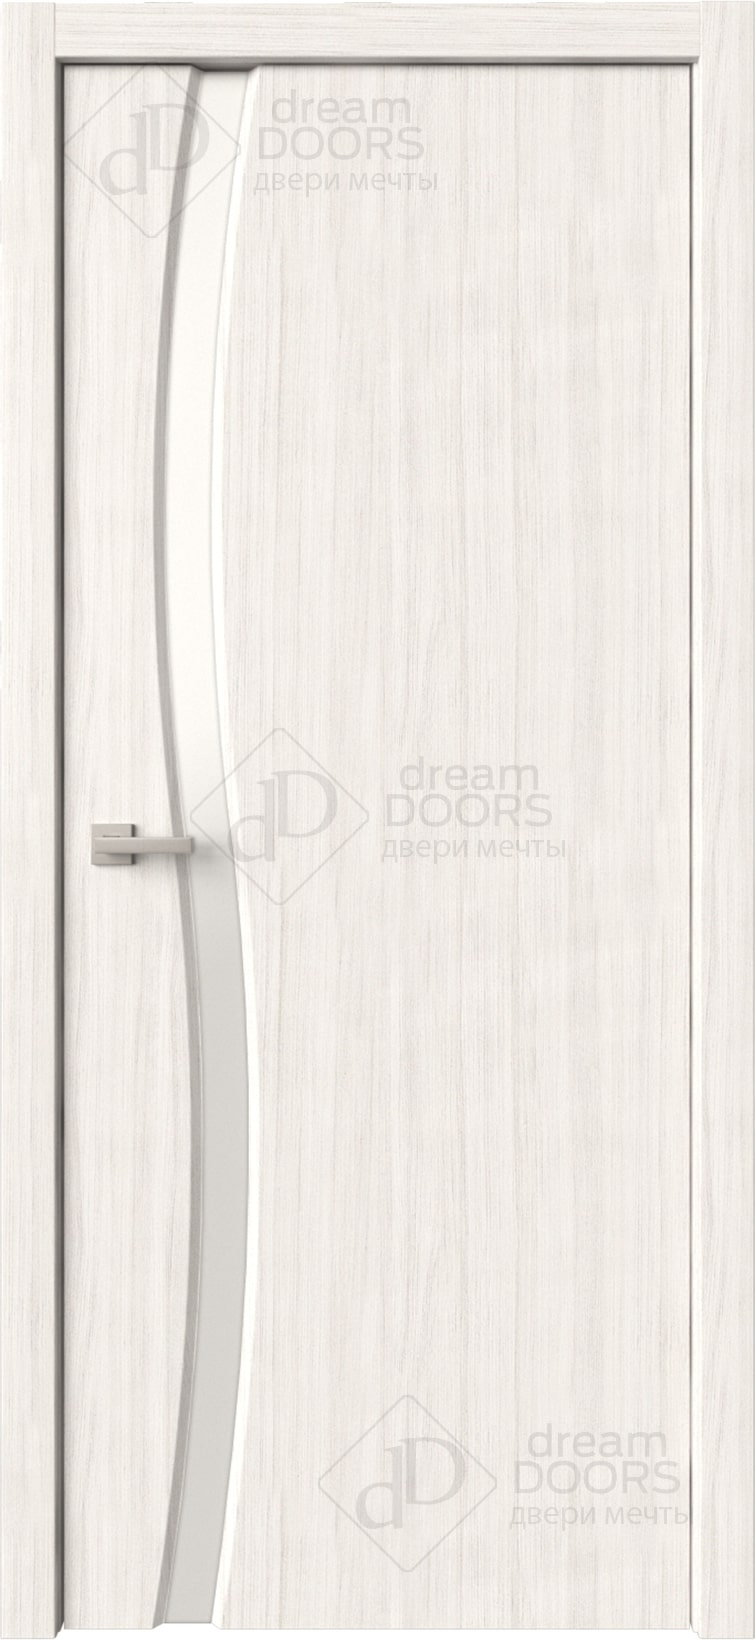 Dream Doors Межкомнатная дверь Сириус 1 узкое ДО, арт. 20080 - фото №5